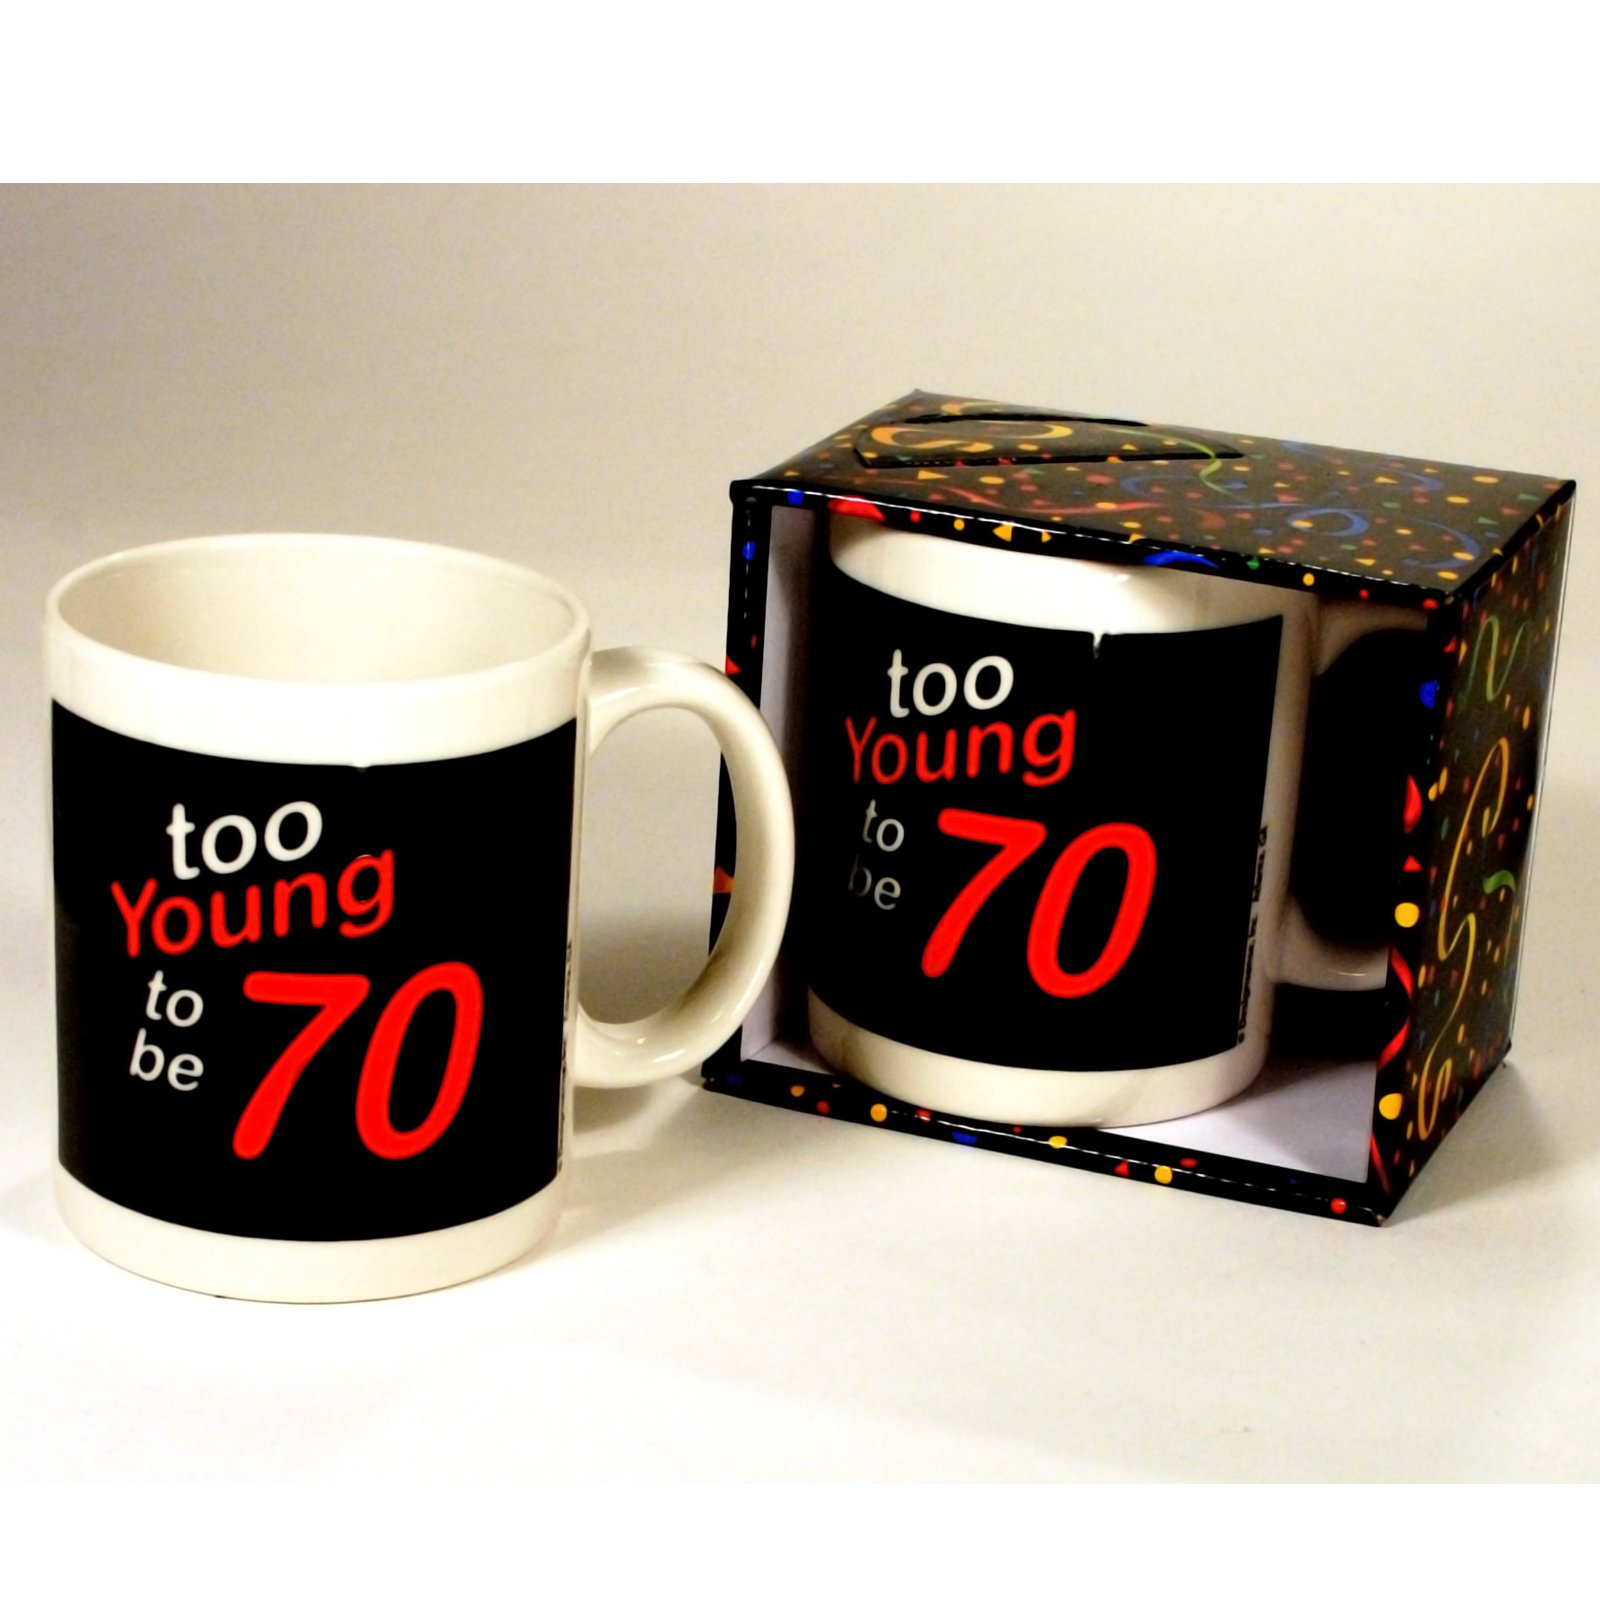 Too Young to be 70 Mug